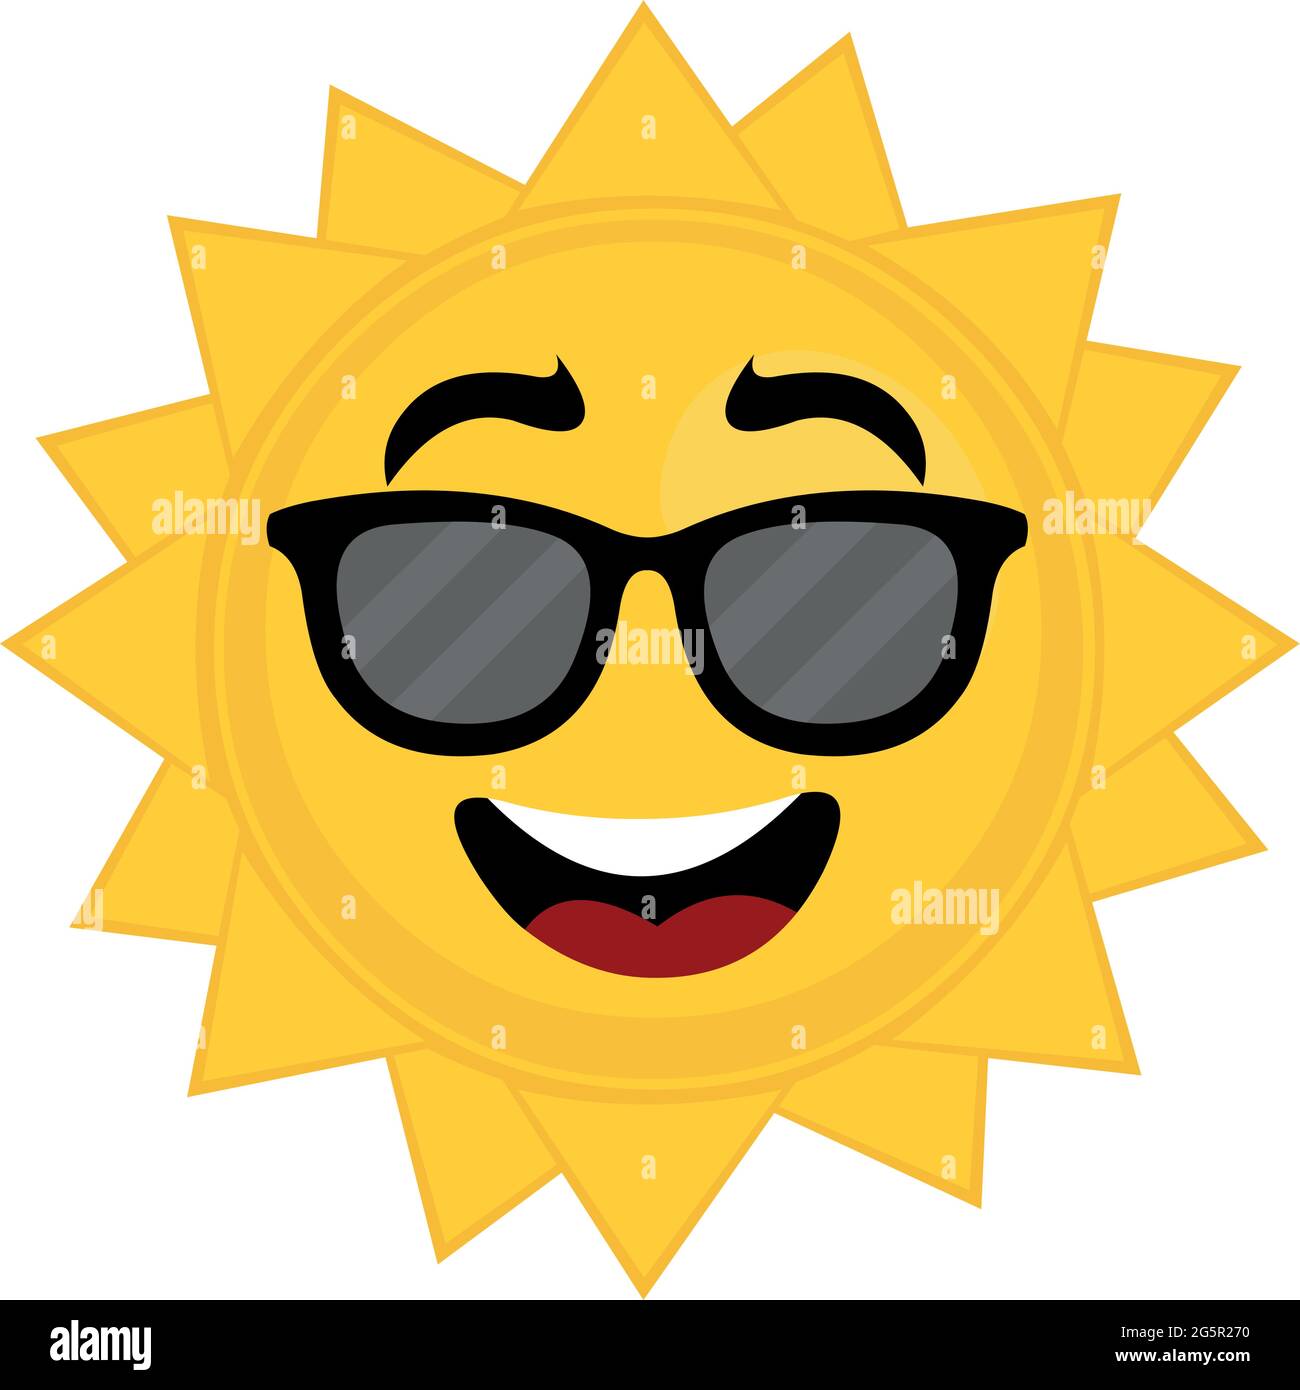 Émoticone vecteur illustration d'un soleil de dessin animé avec des lunettes  de soleil Image Vectorielle Stock - Alamy